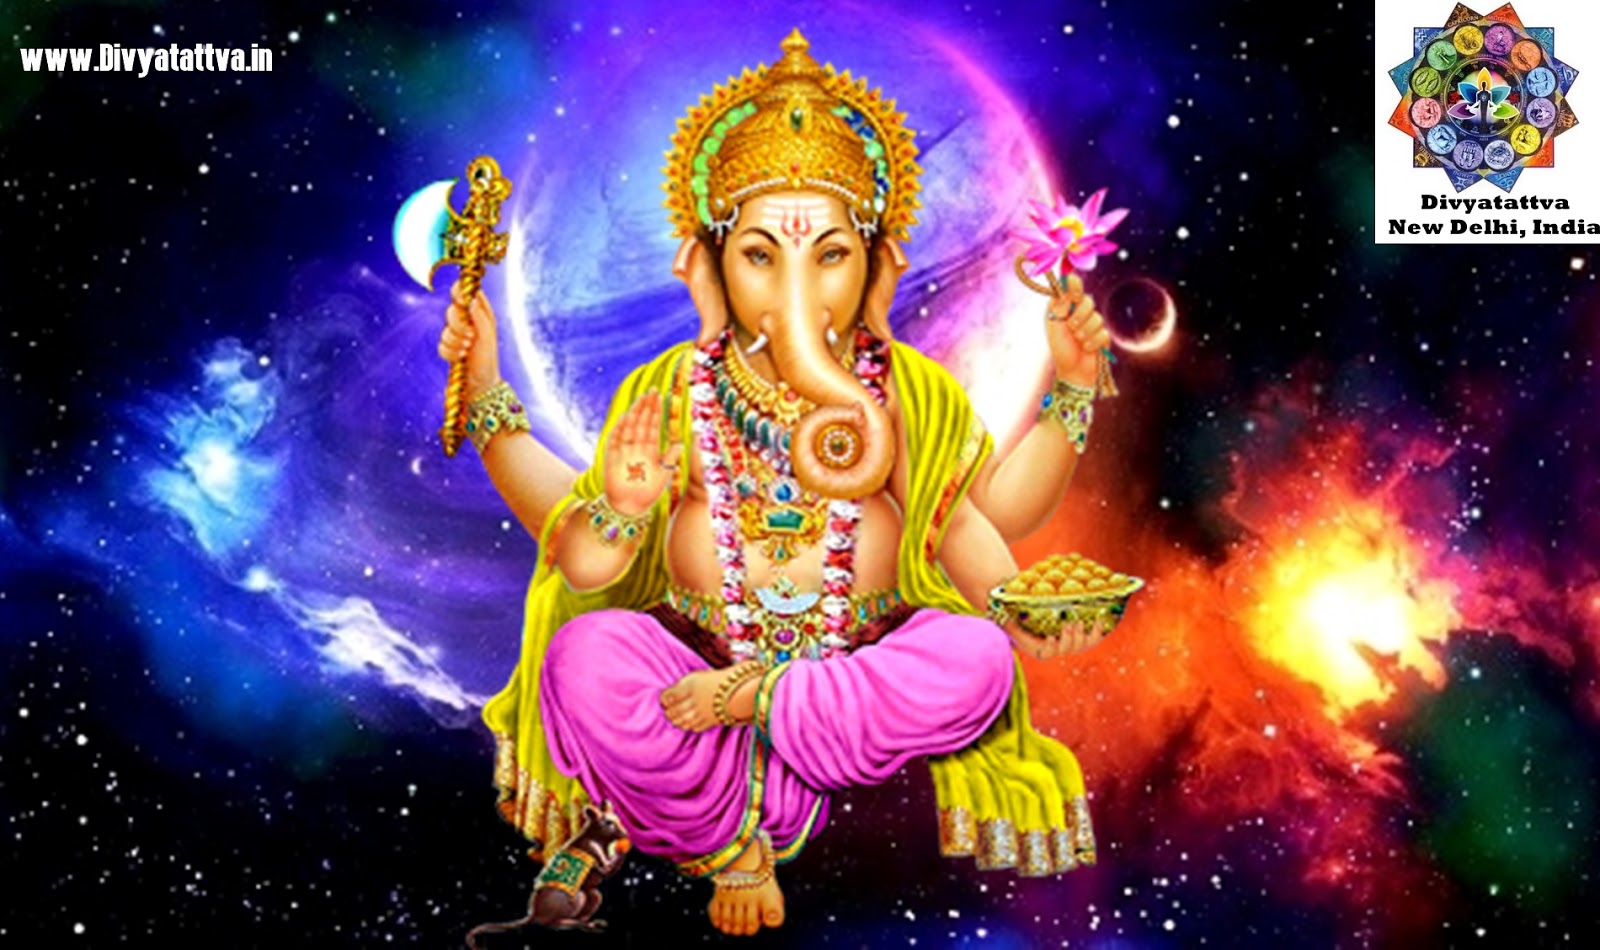 Ganesh Hd Wallpapers For Mobile, Lord Ganesha Hd Wallpapers, - Ganesh God  Images Hd 1080p - 1600x950 Wallpaper 